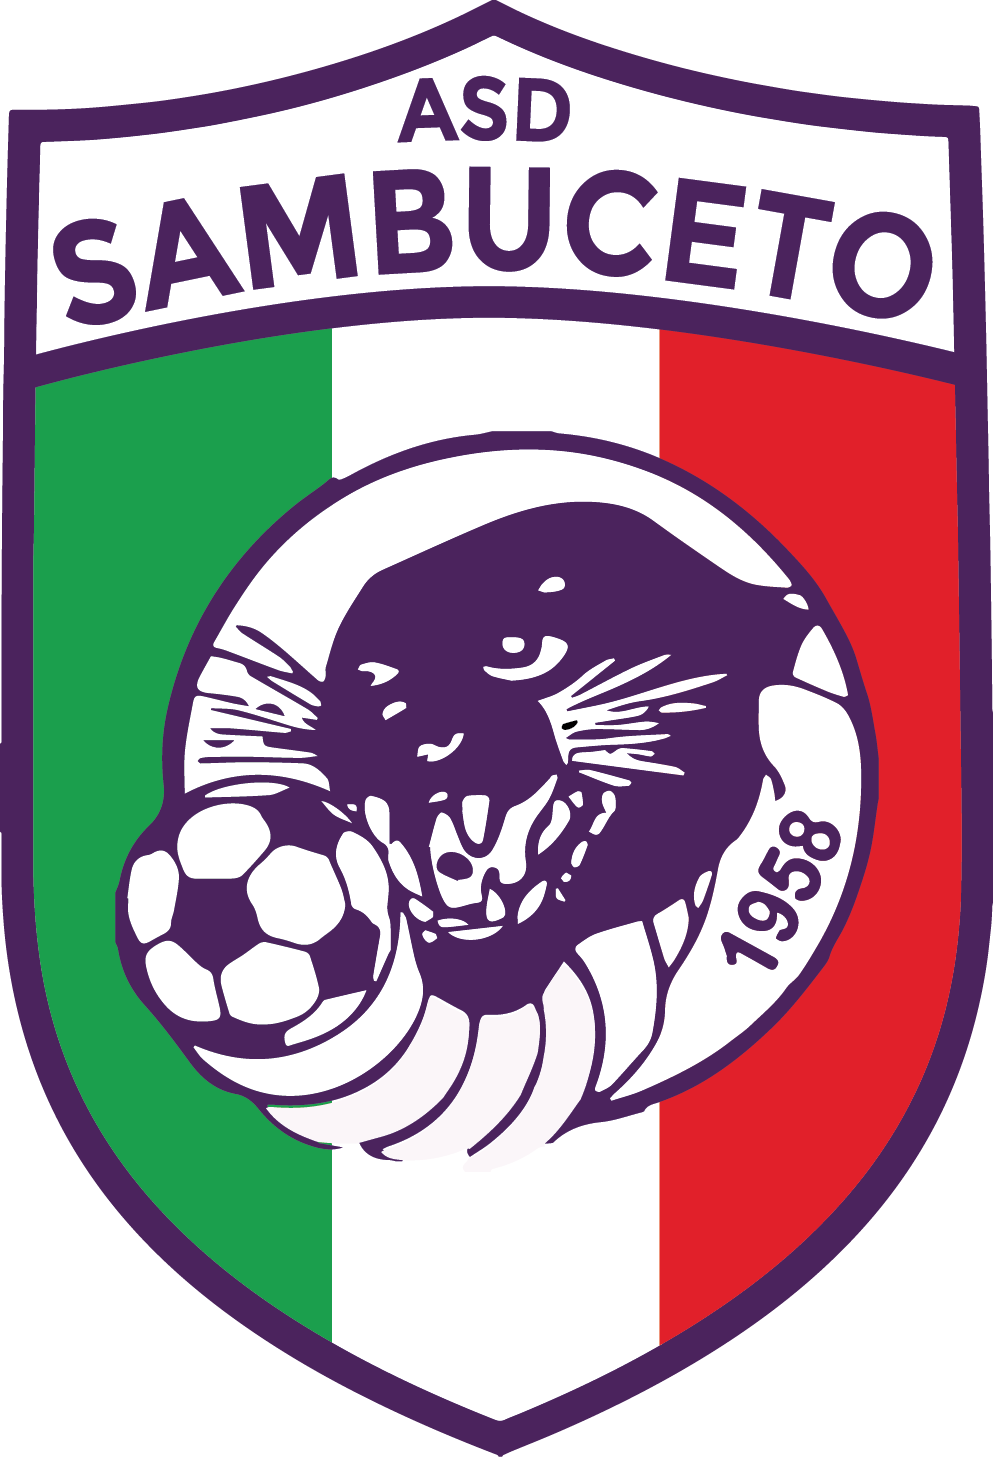 Sambuceto